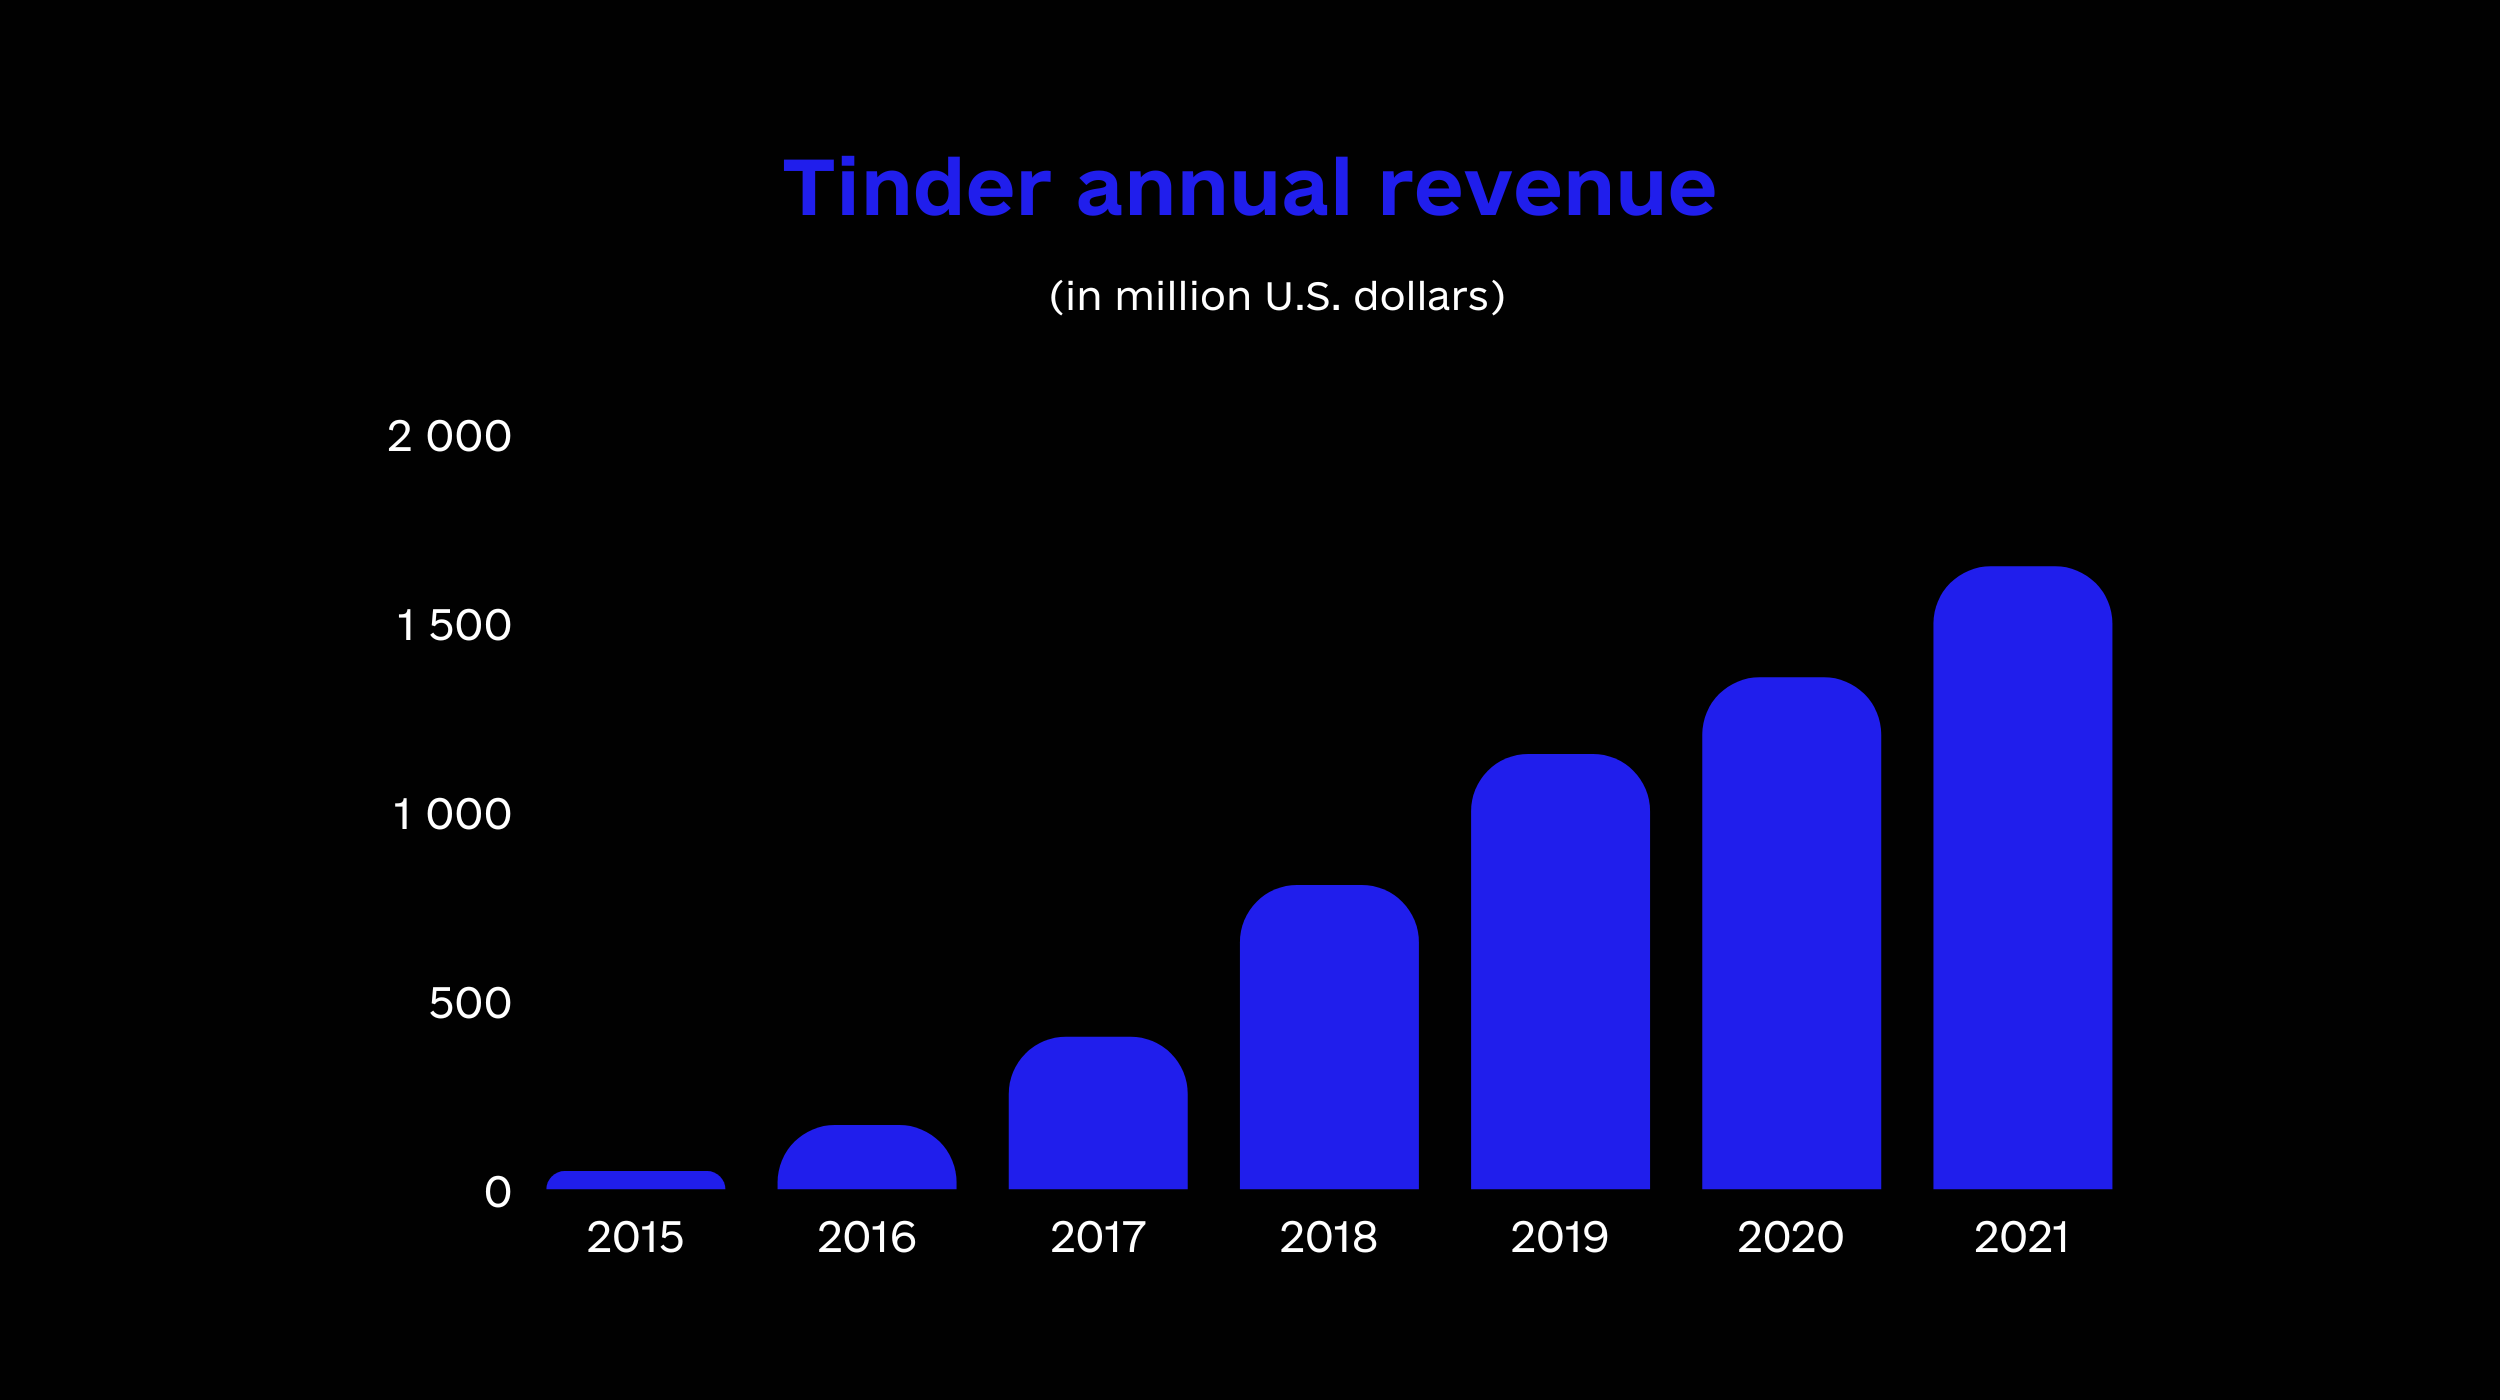 Tinder annual revenue